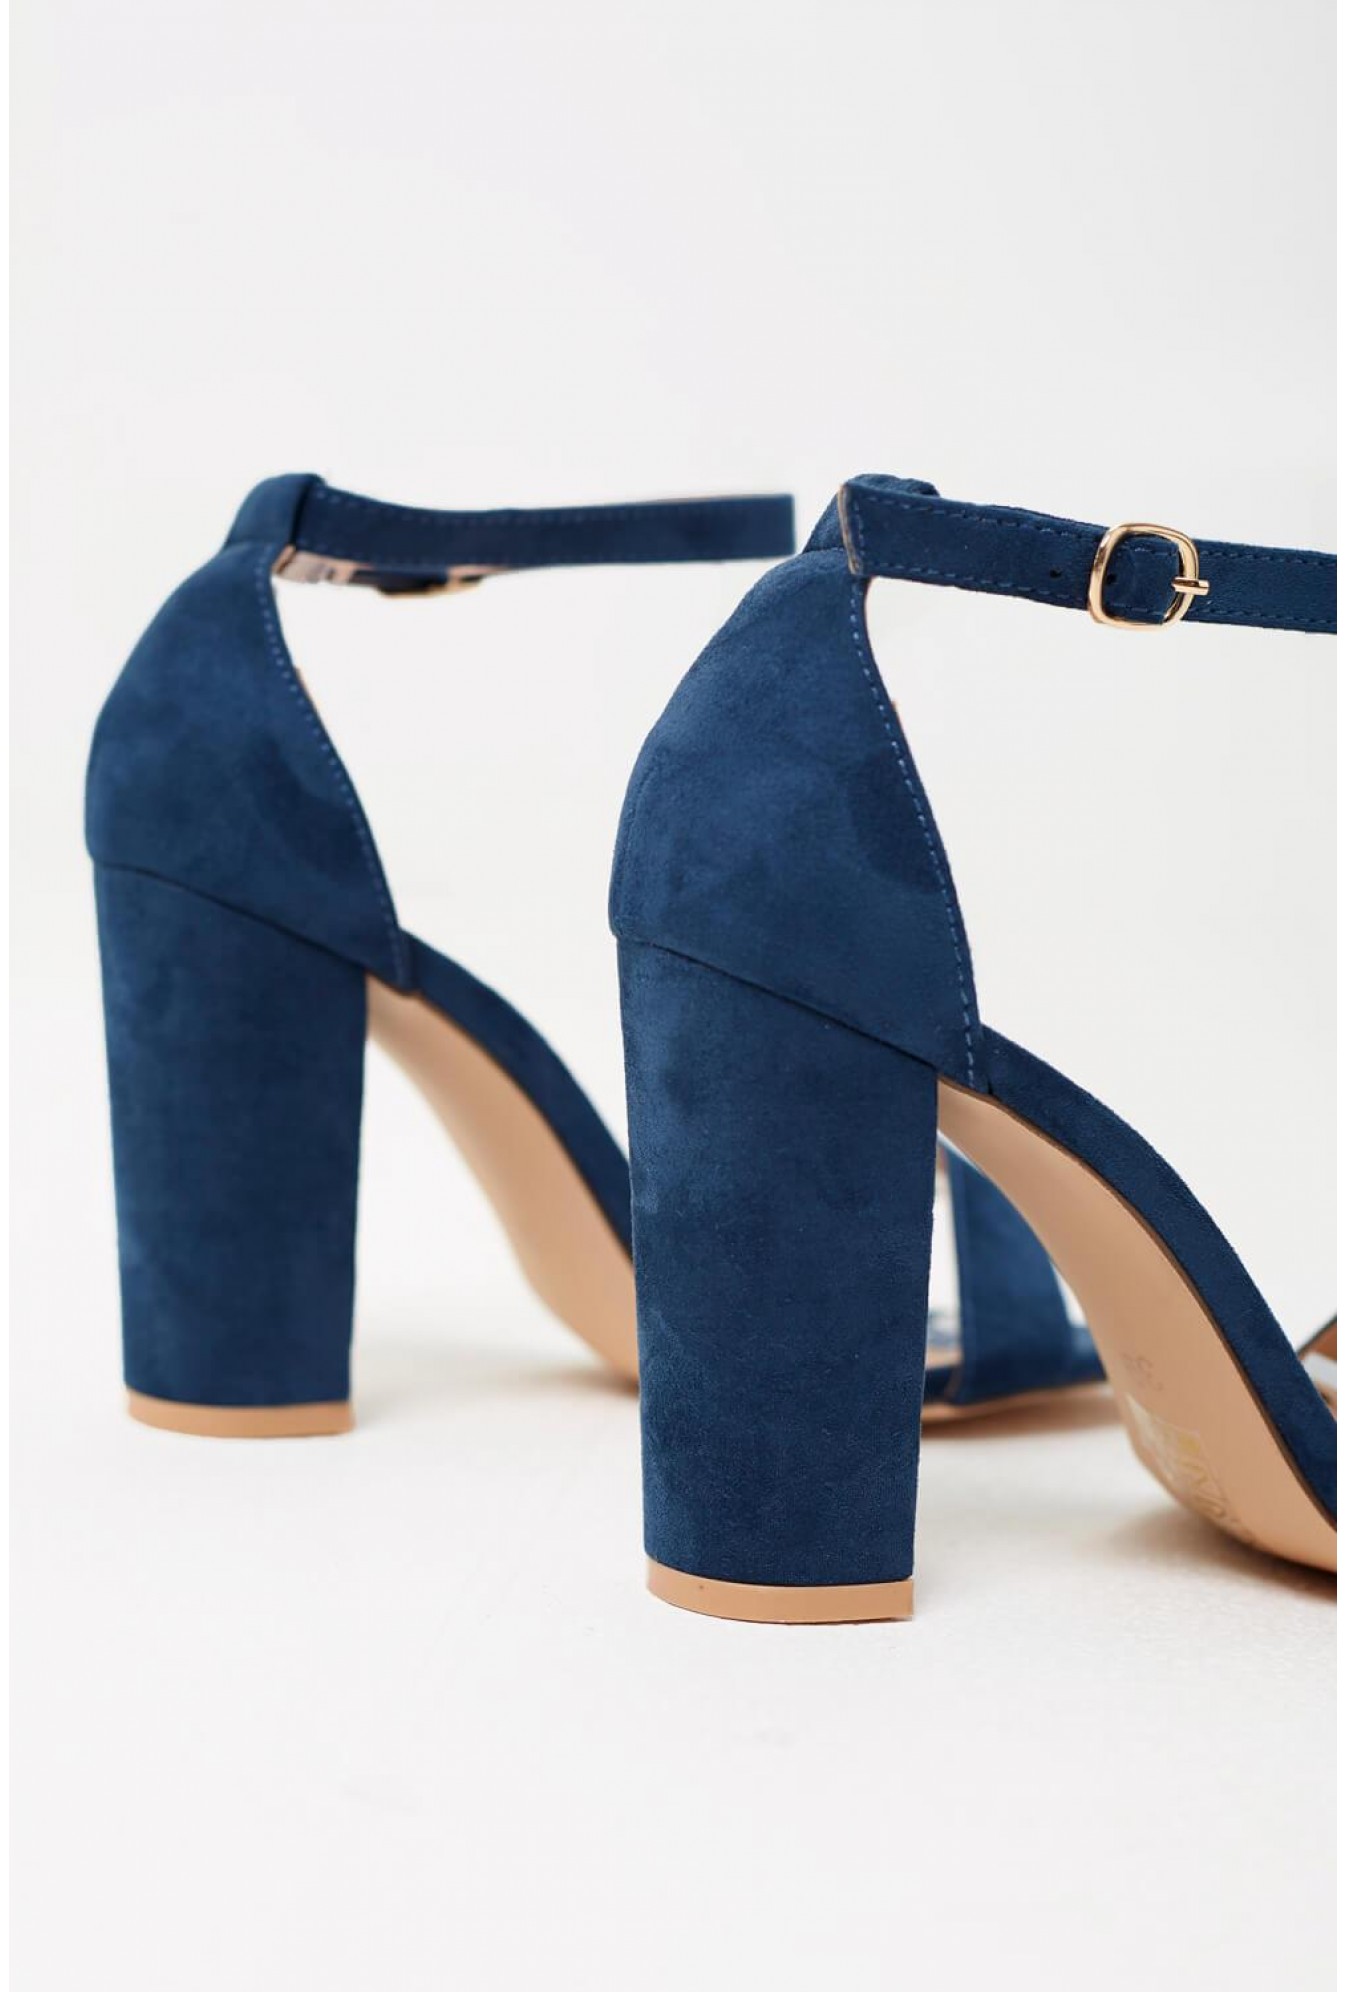 navy blue shoes block heel